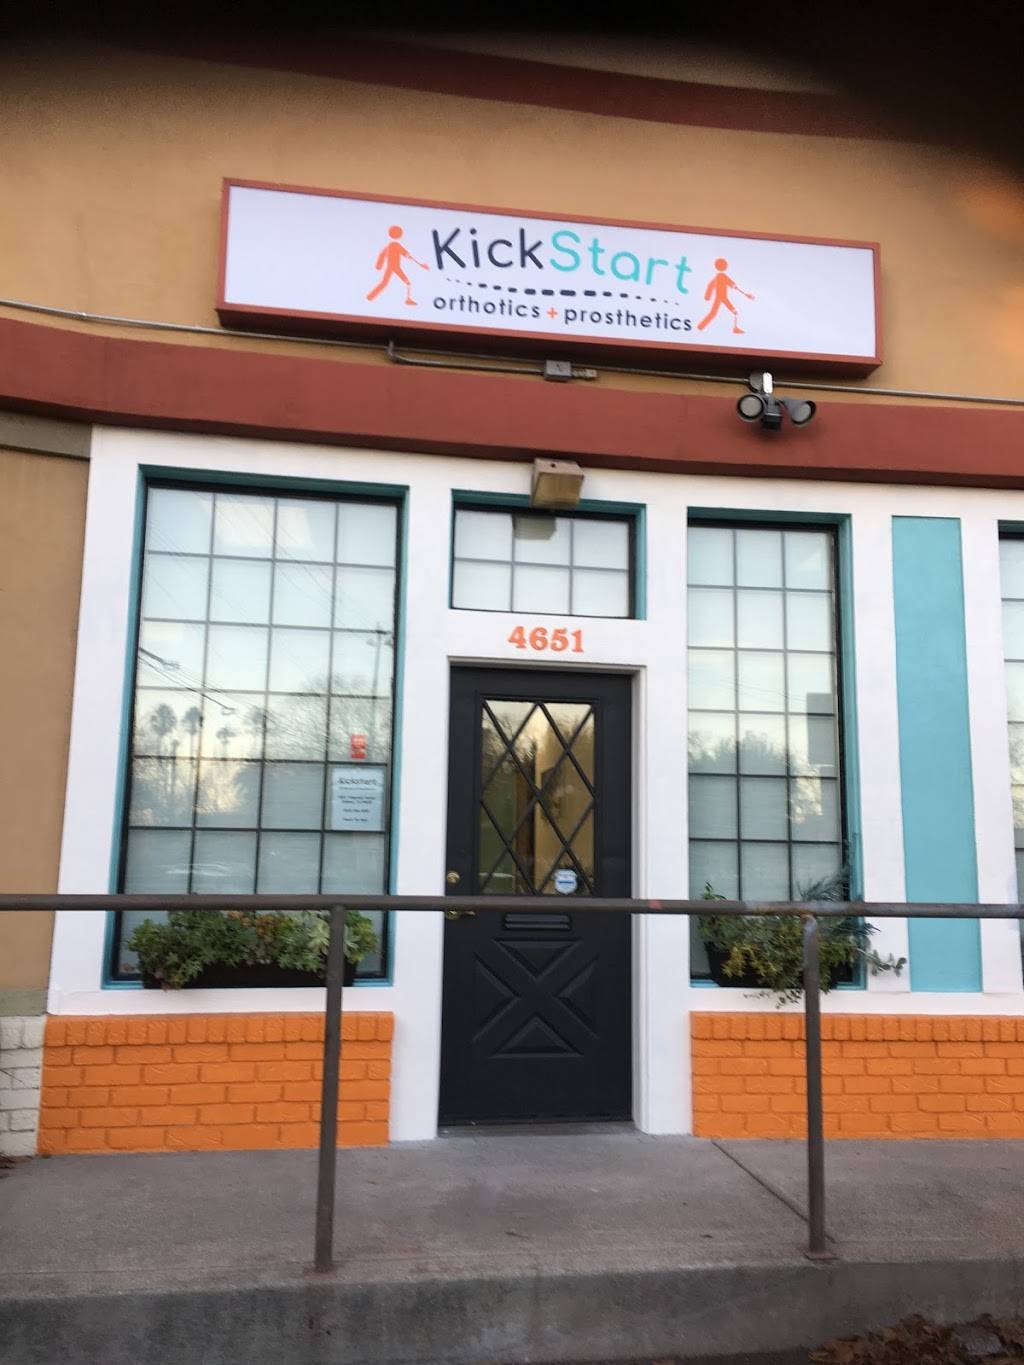 Kickstart Orthotics & Prosthetics by Tony LaFrance CPO | 4651 Telegraph Ave, Oakland, CA 94609 | Phone: (510) 996-4200